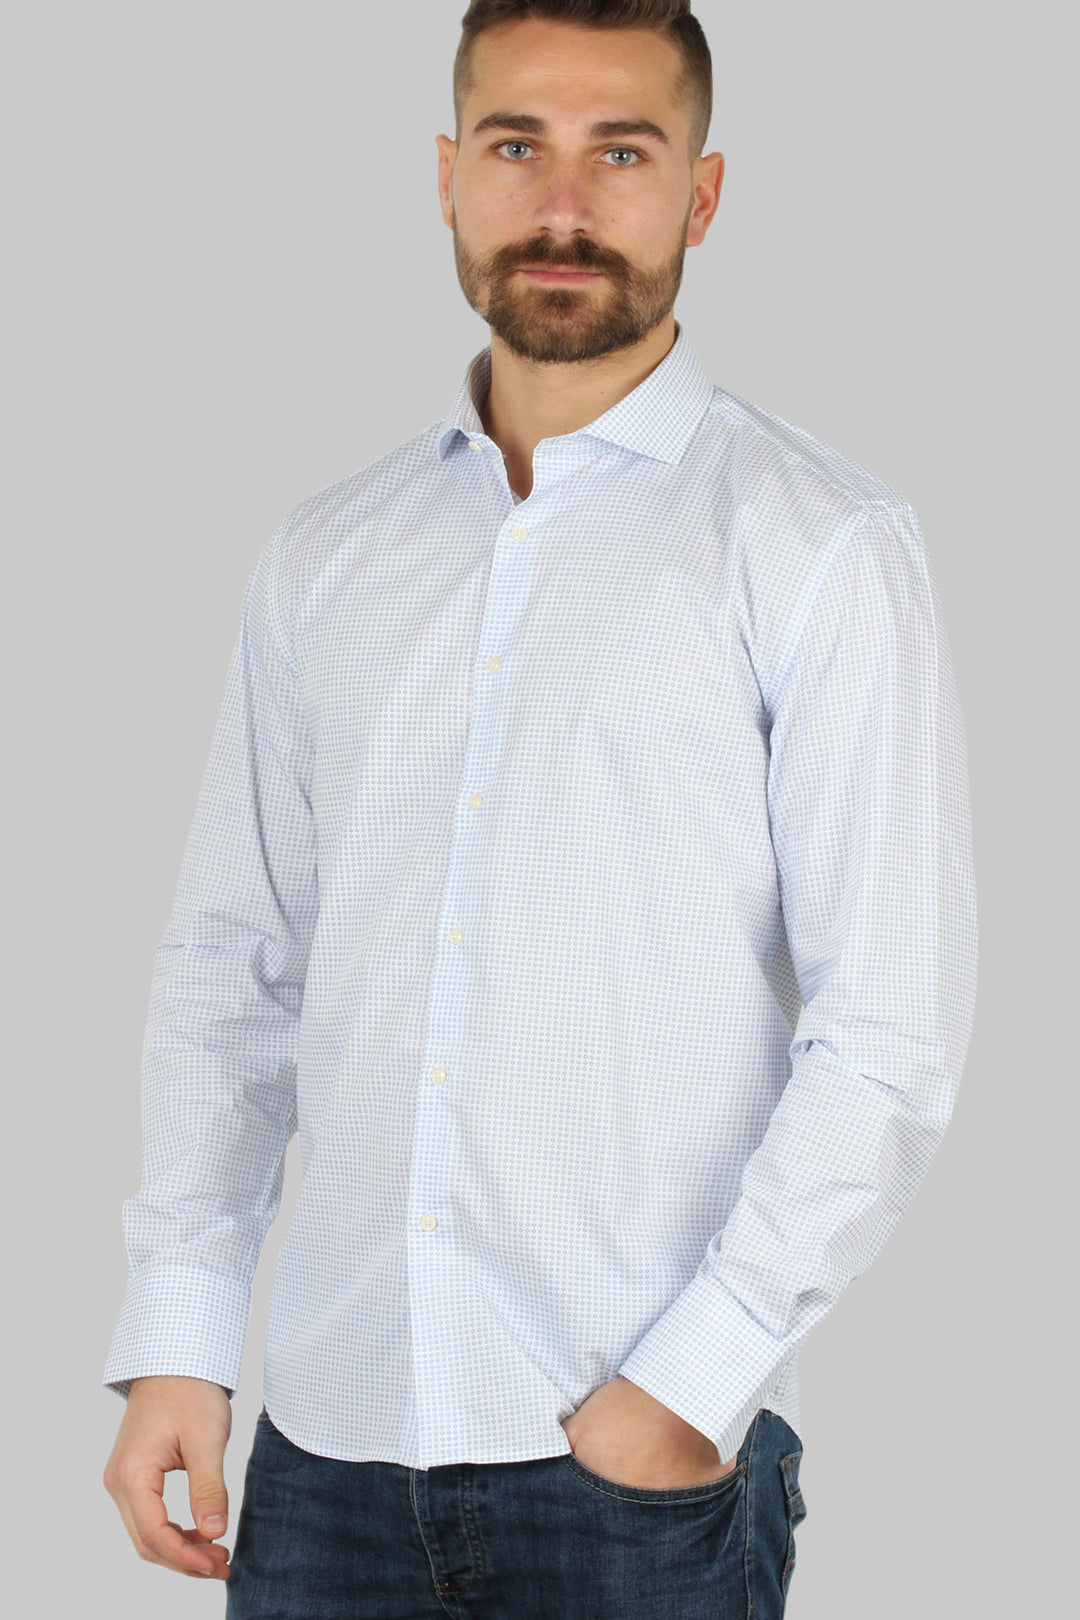 Camicia da uomo bianca microfantasia a contrasto